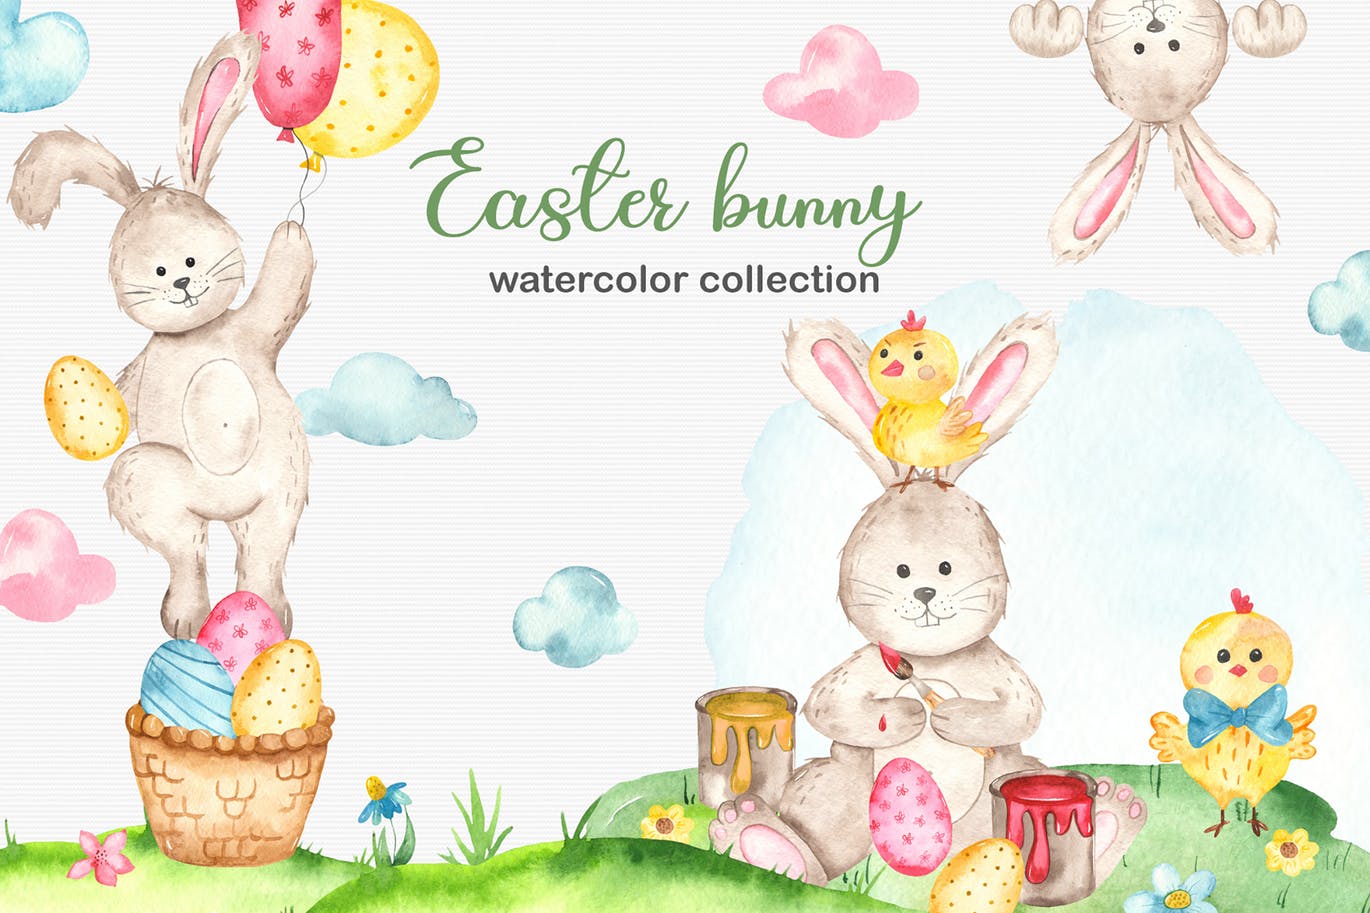 复活节兔子水彩手绘素材套装 Watercolor Easter Bunny collection插图